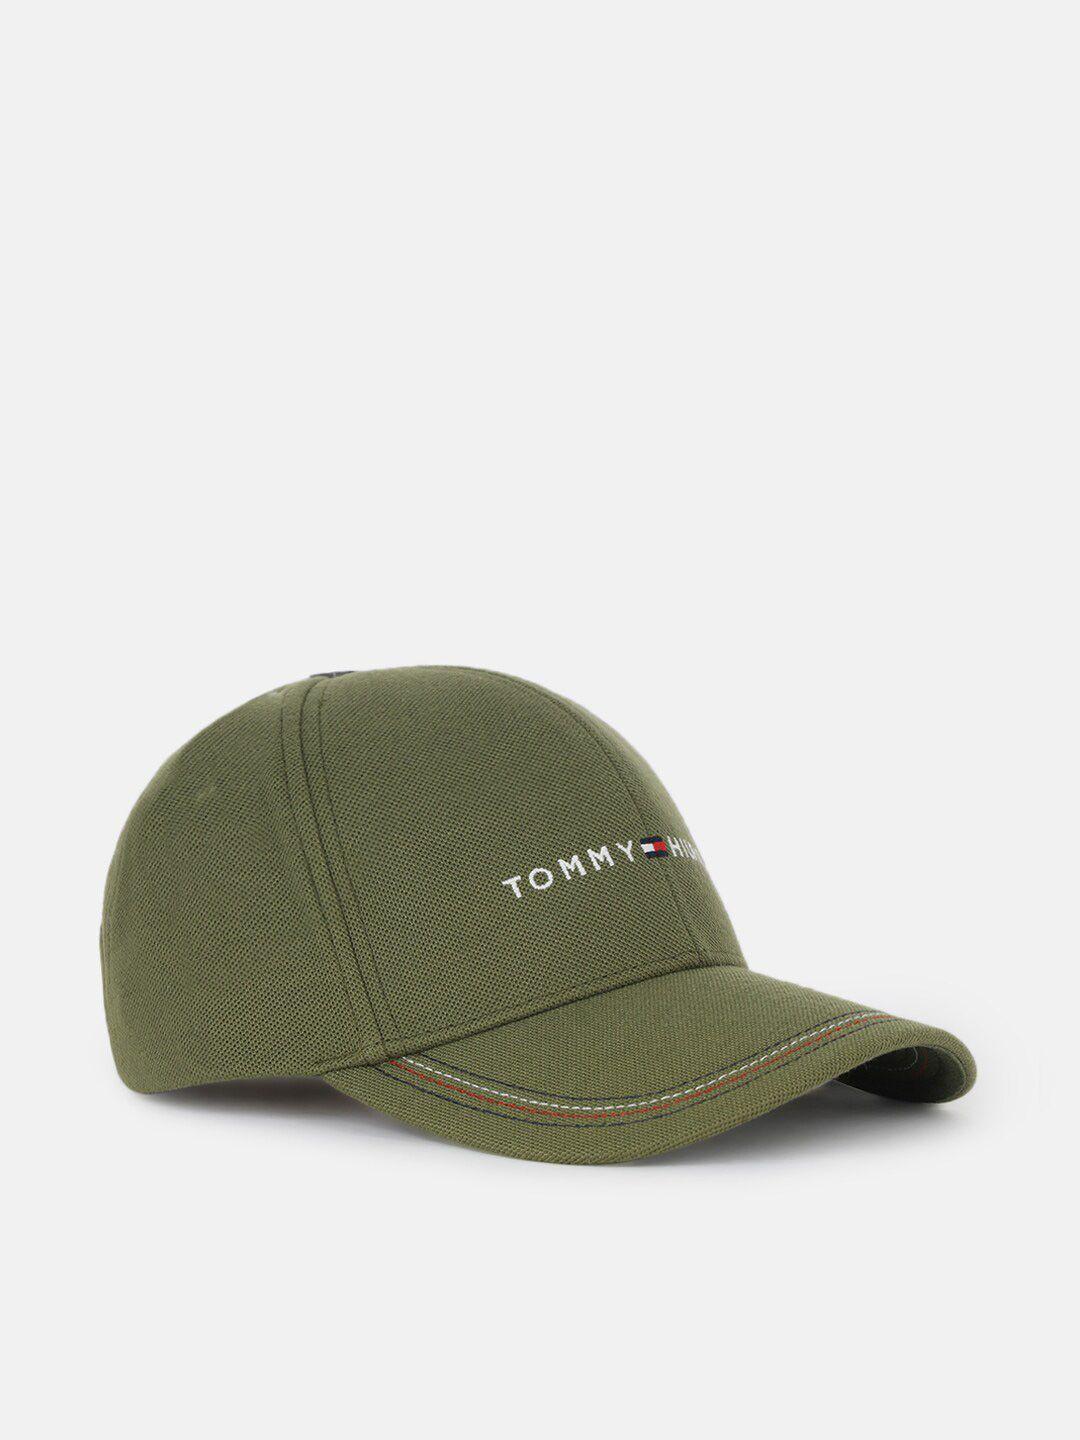 tommy-hilfiger-men-embroidered-baseball-cap